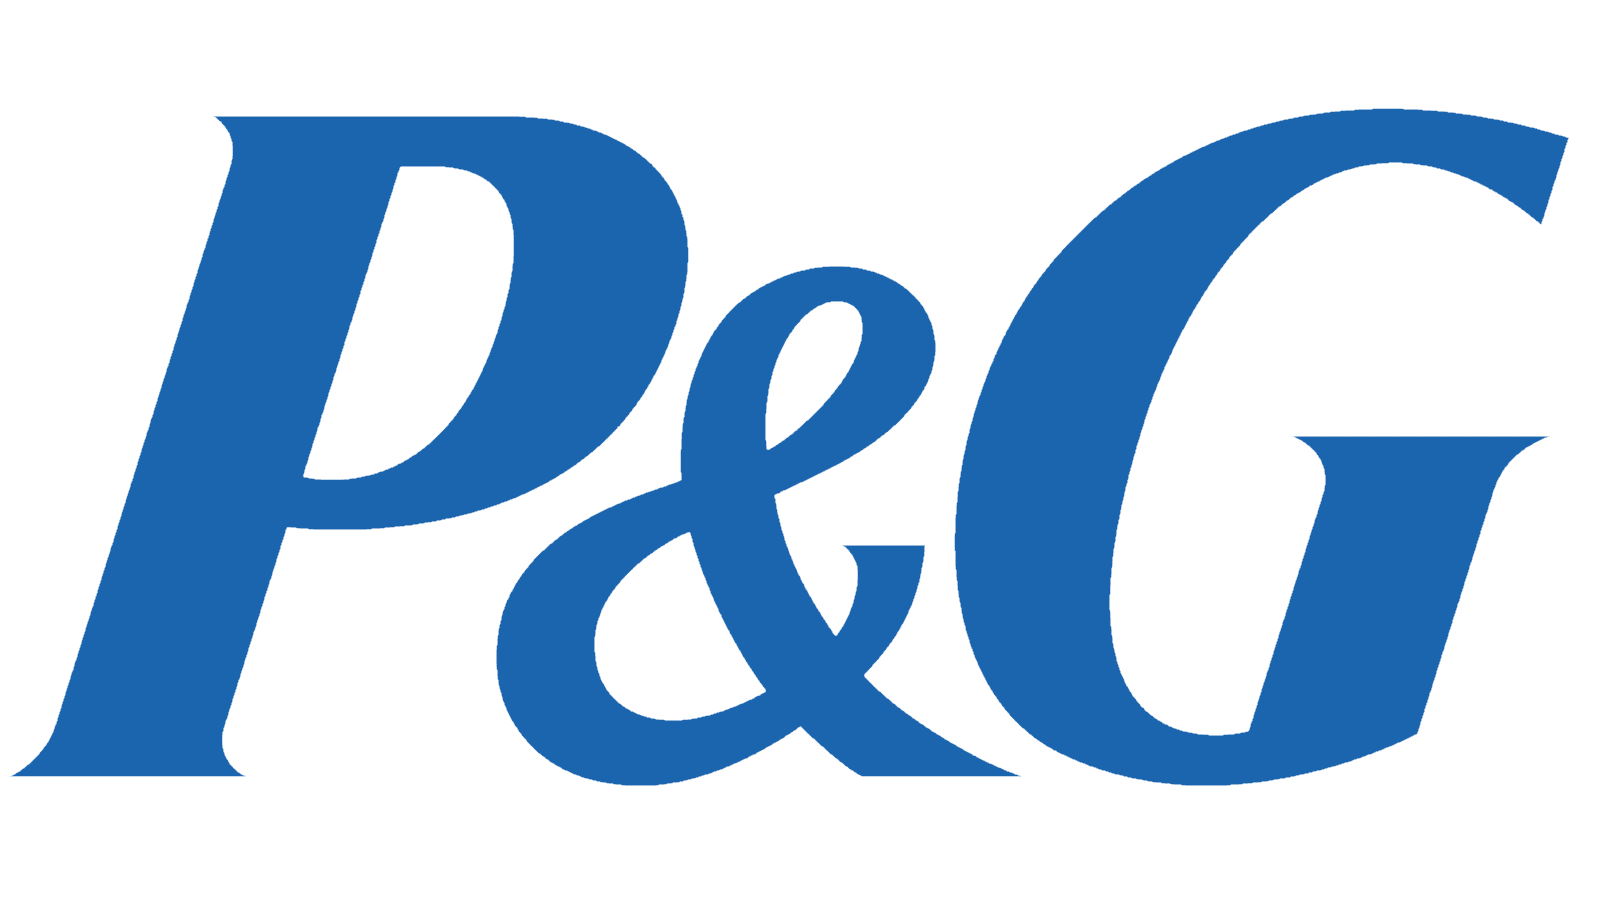 Pg logo